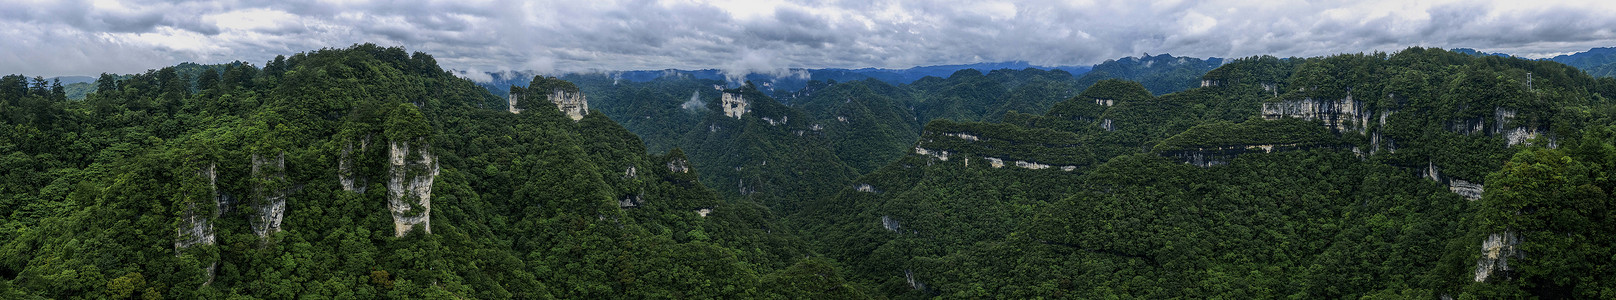 栏目名称世界自然遗产贵州施秉云台山航拍摄影图片背景